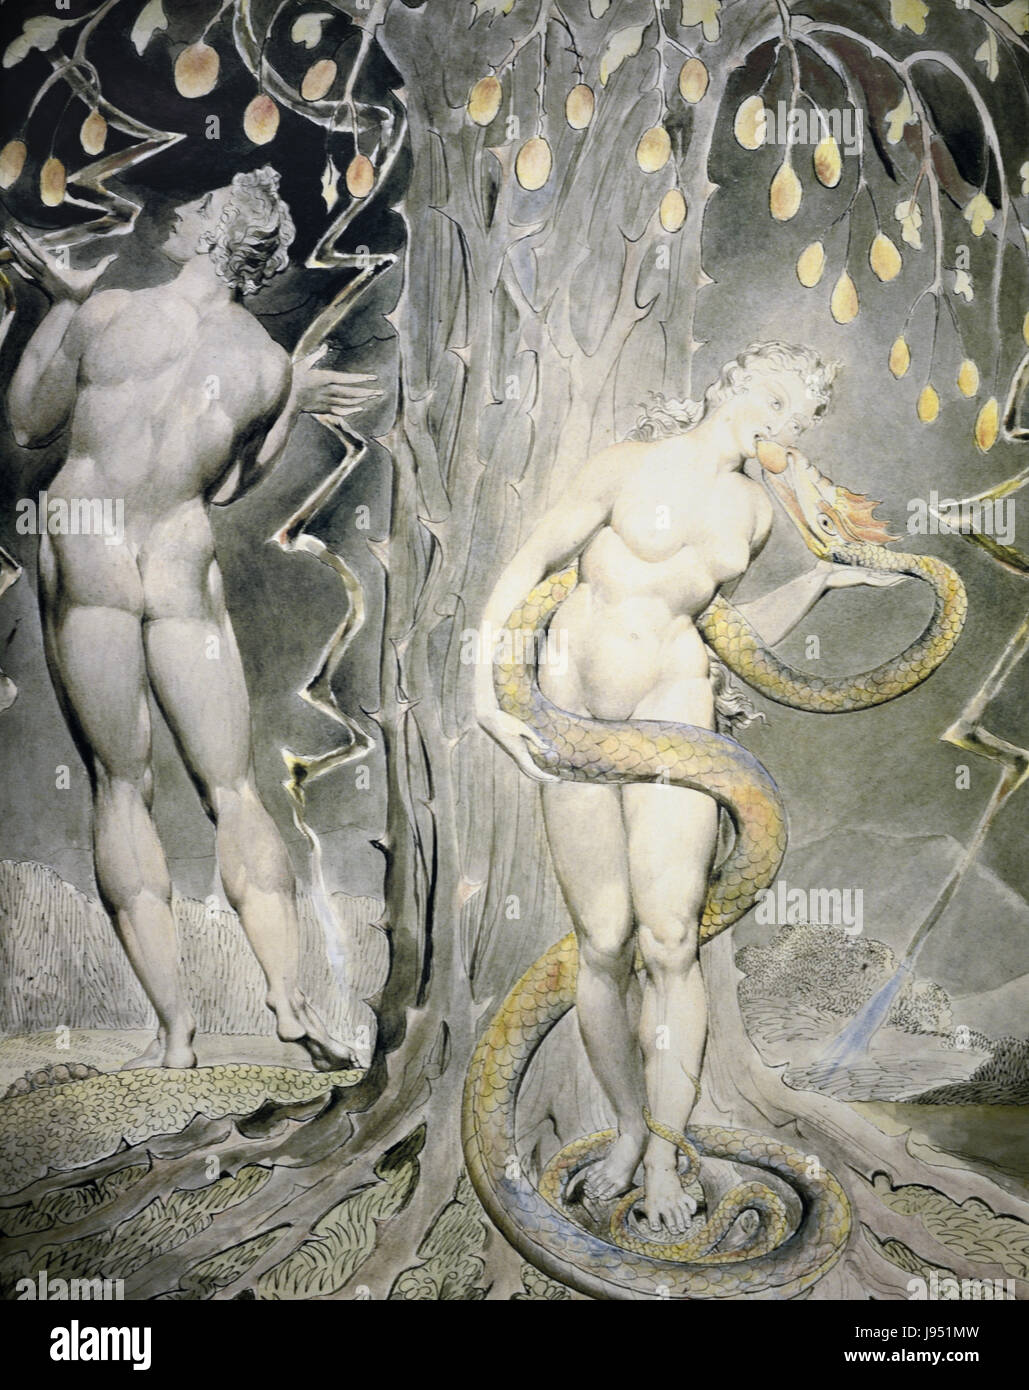 La tentation d'automne d'Ève dans le jardin d'Eden. La lithographie par William Blake 1808 Banque D'Images